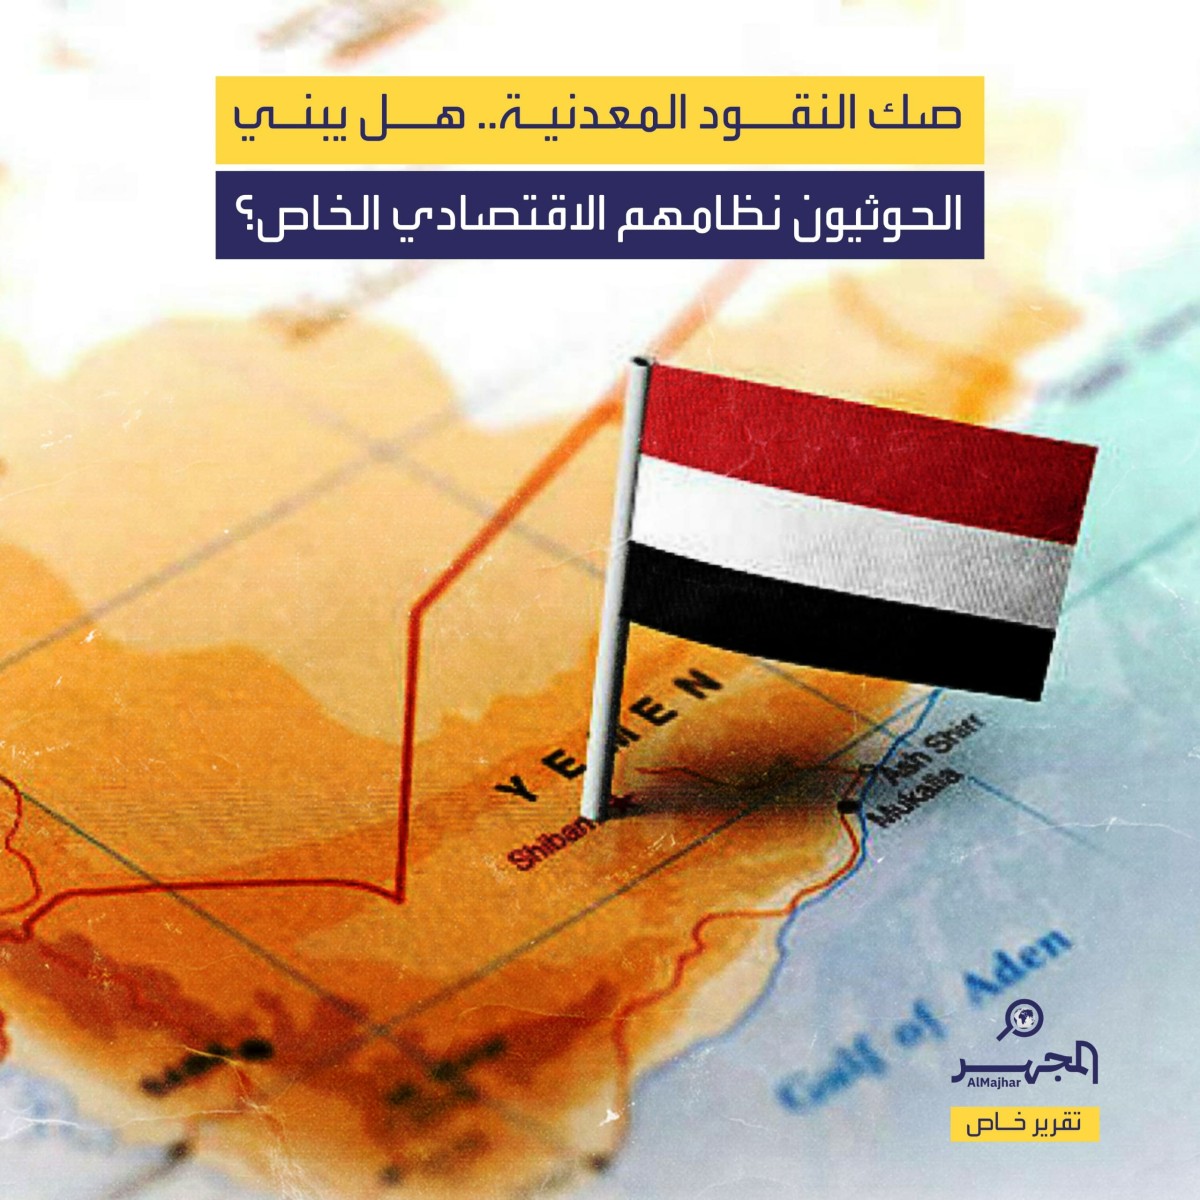 صك النقود المعدنية.. هل يبني الحوثيون نظامهم الاقتصادي الخاص؟ (تقرير خاص)